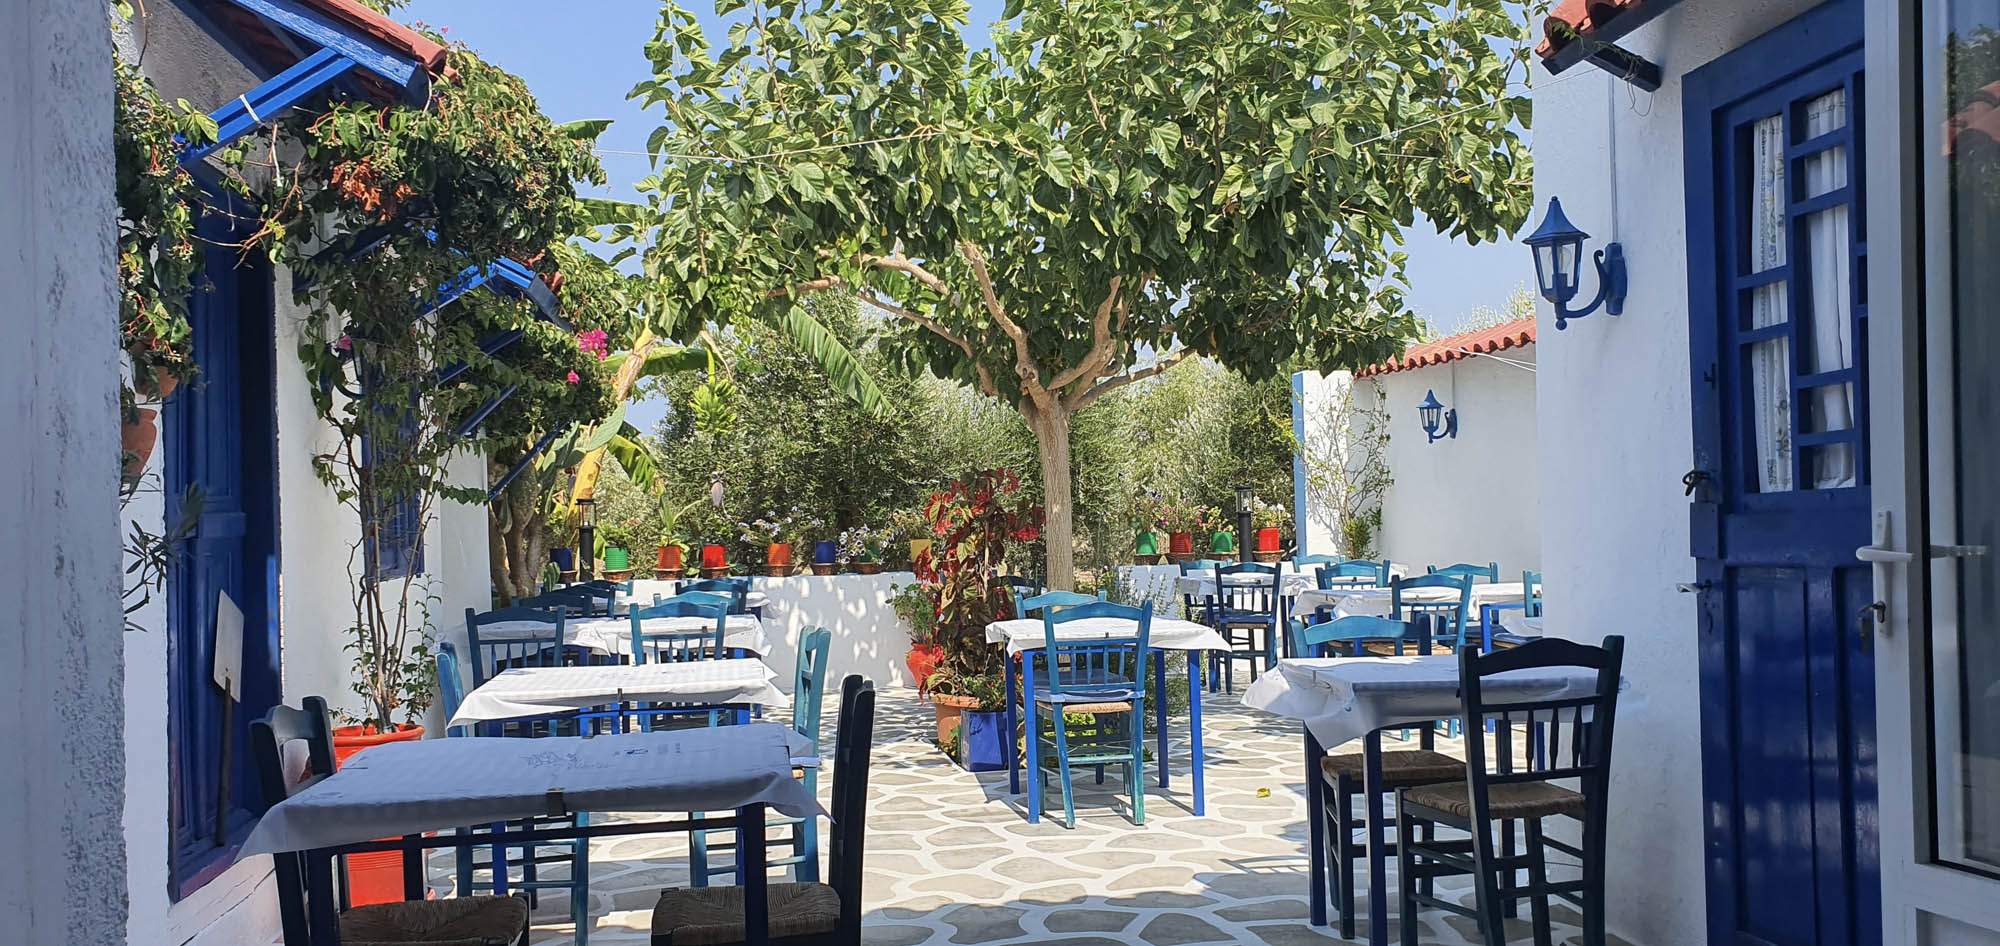 typowa grecjka ulica ze stolikami i krzesłami, biało niebieskie tawerny